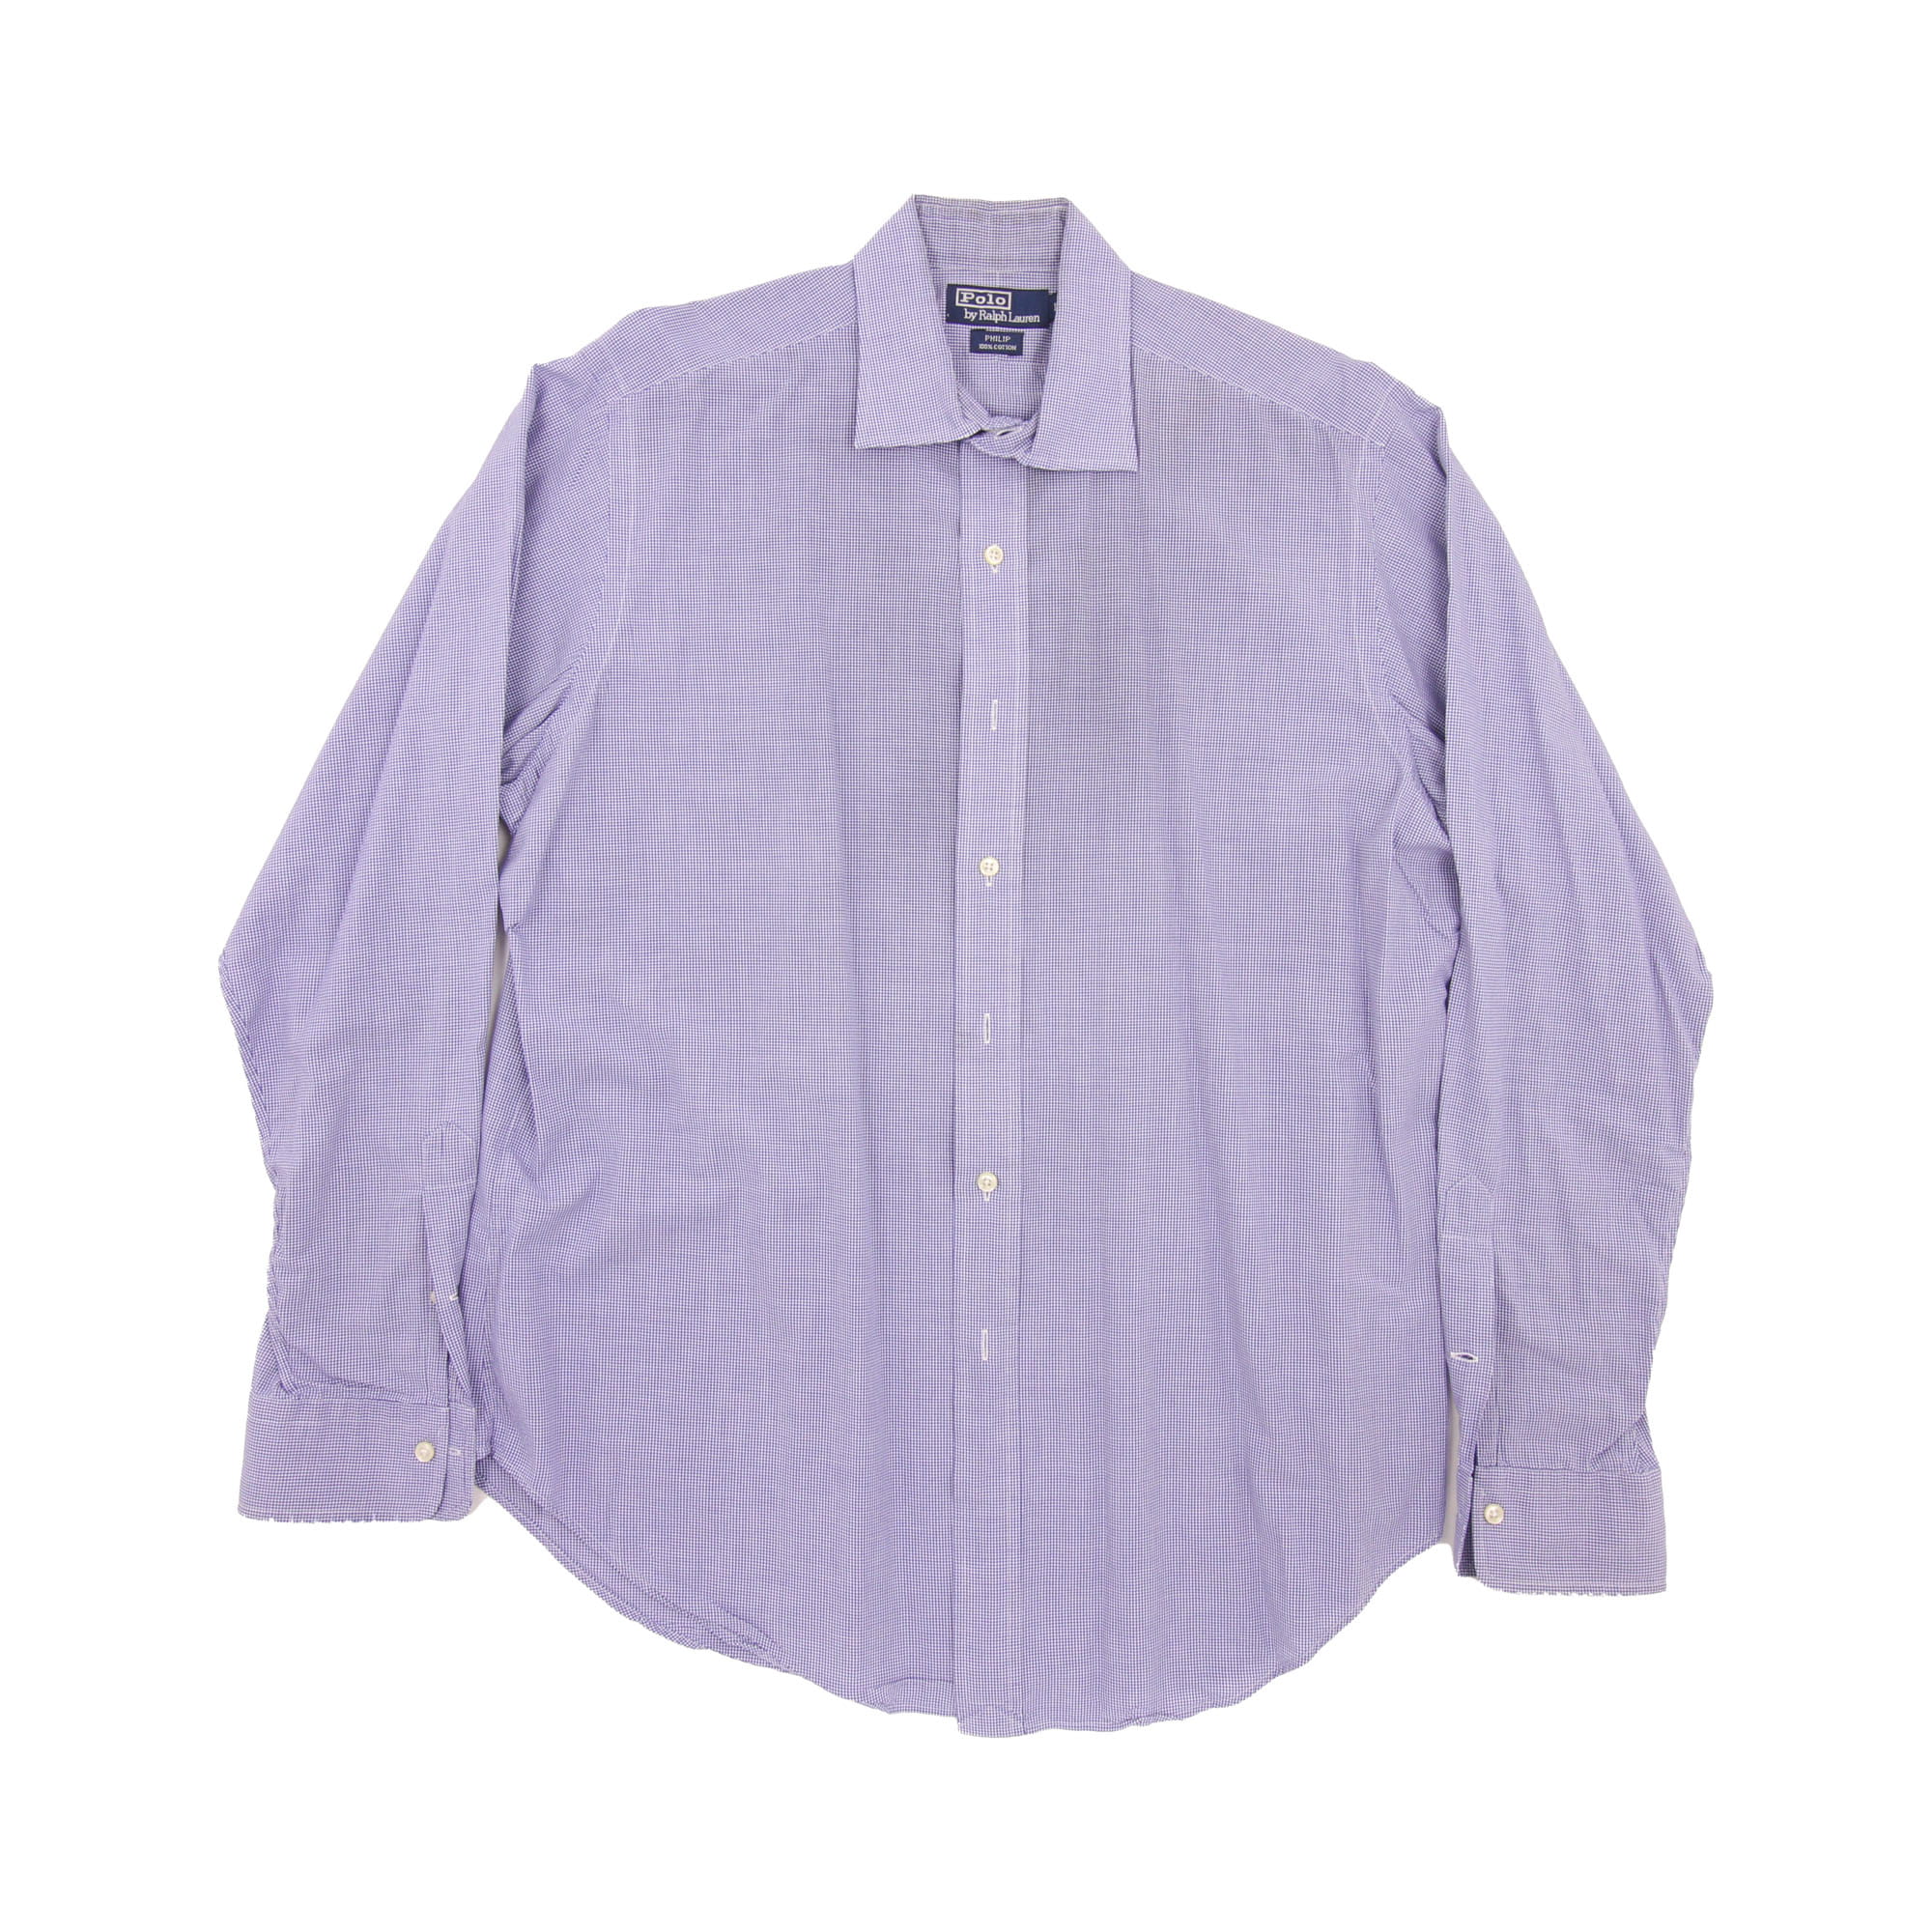 Polo Ralph Lauren Long Sleeve Shirt -  L/XL